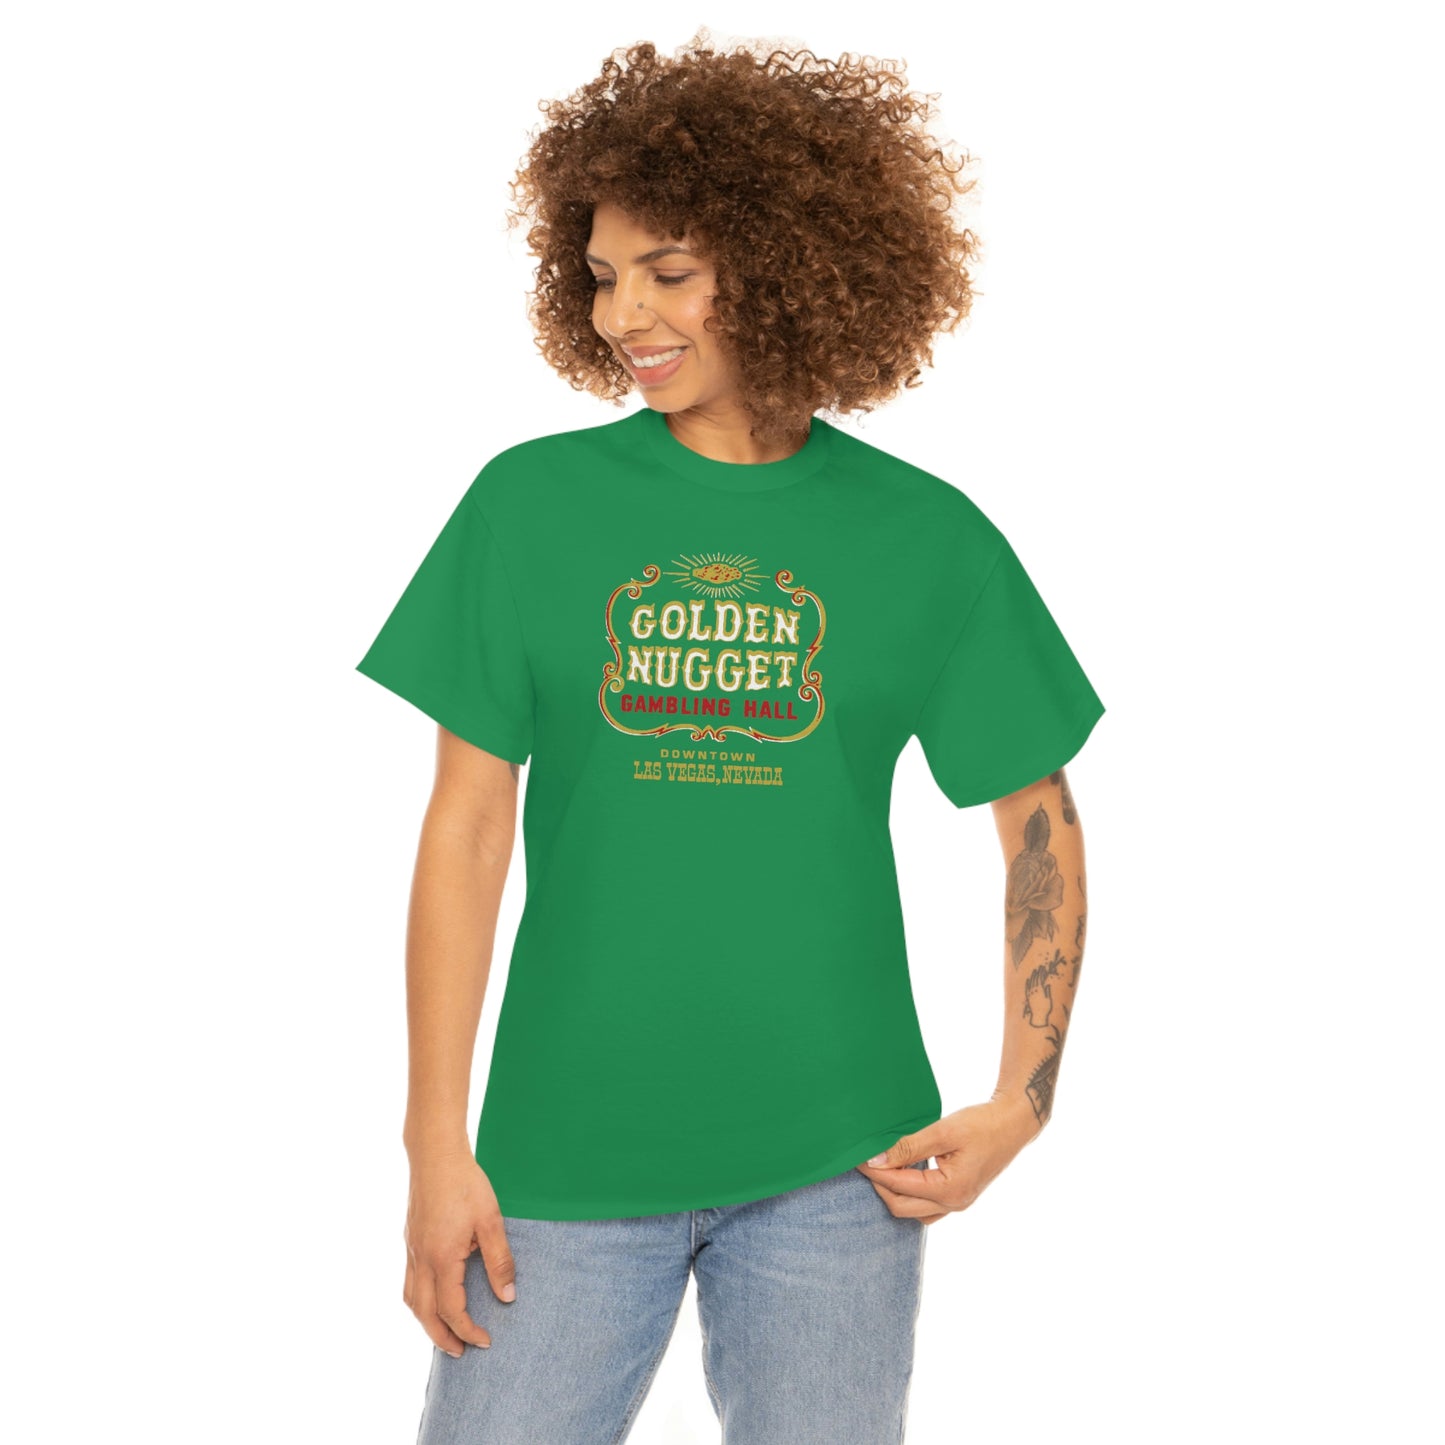 Golden Nugget Gambling Hall T-Shirt